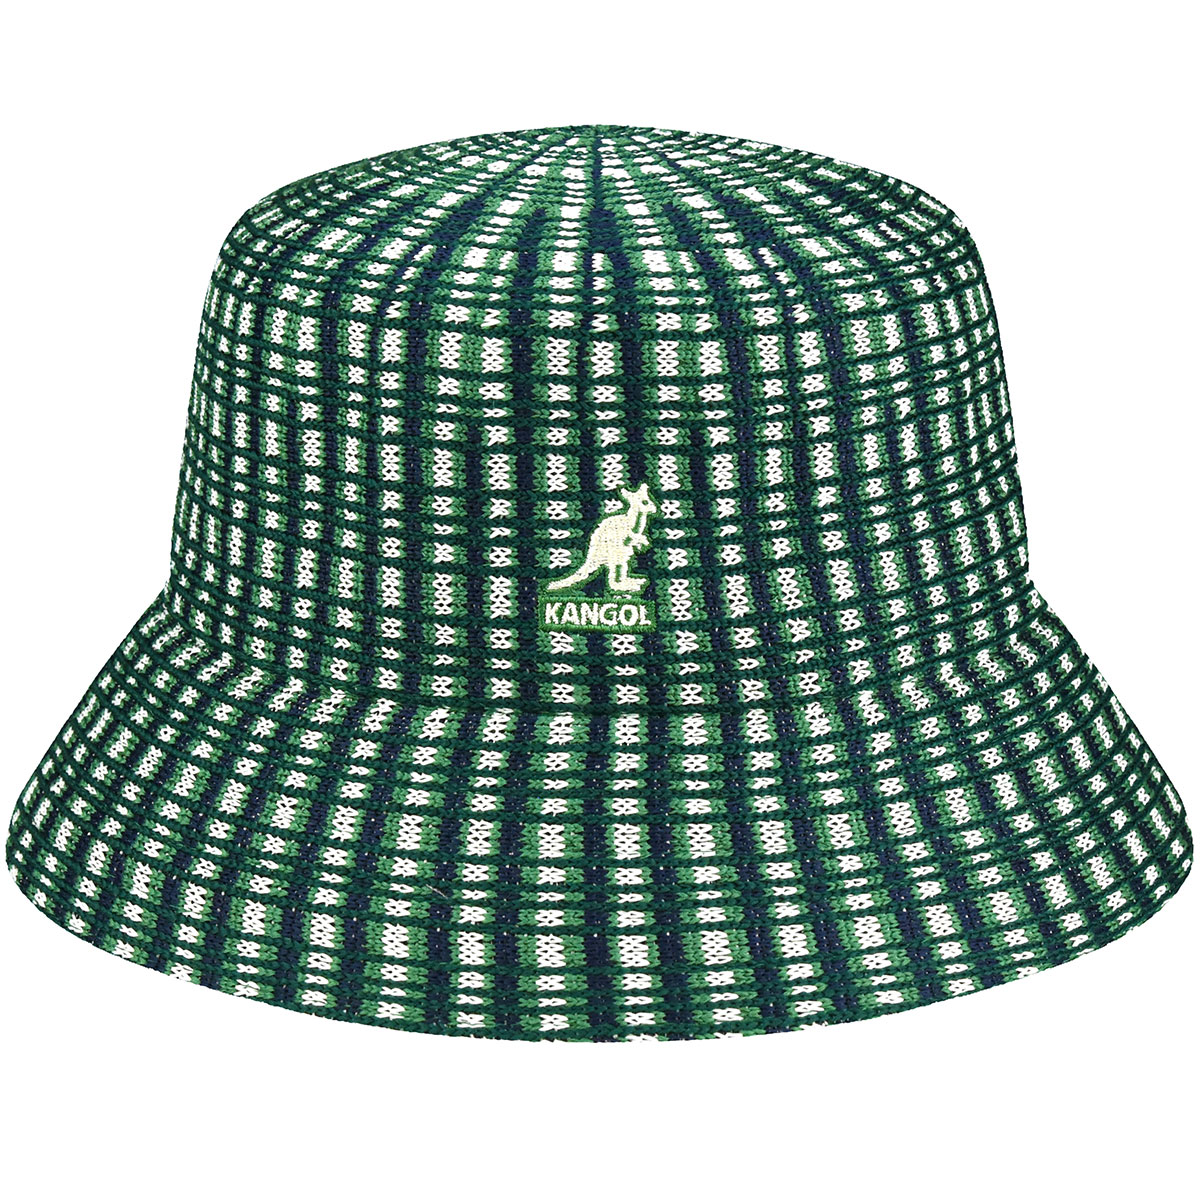 Hats - Green Plaid